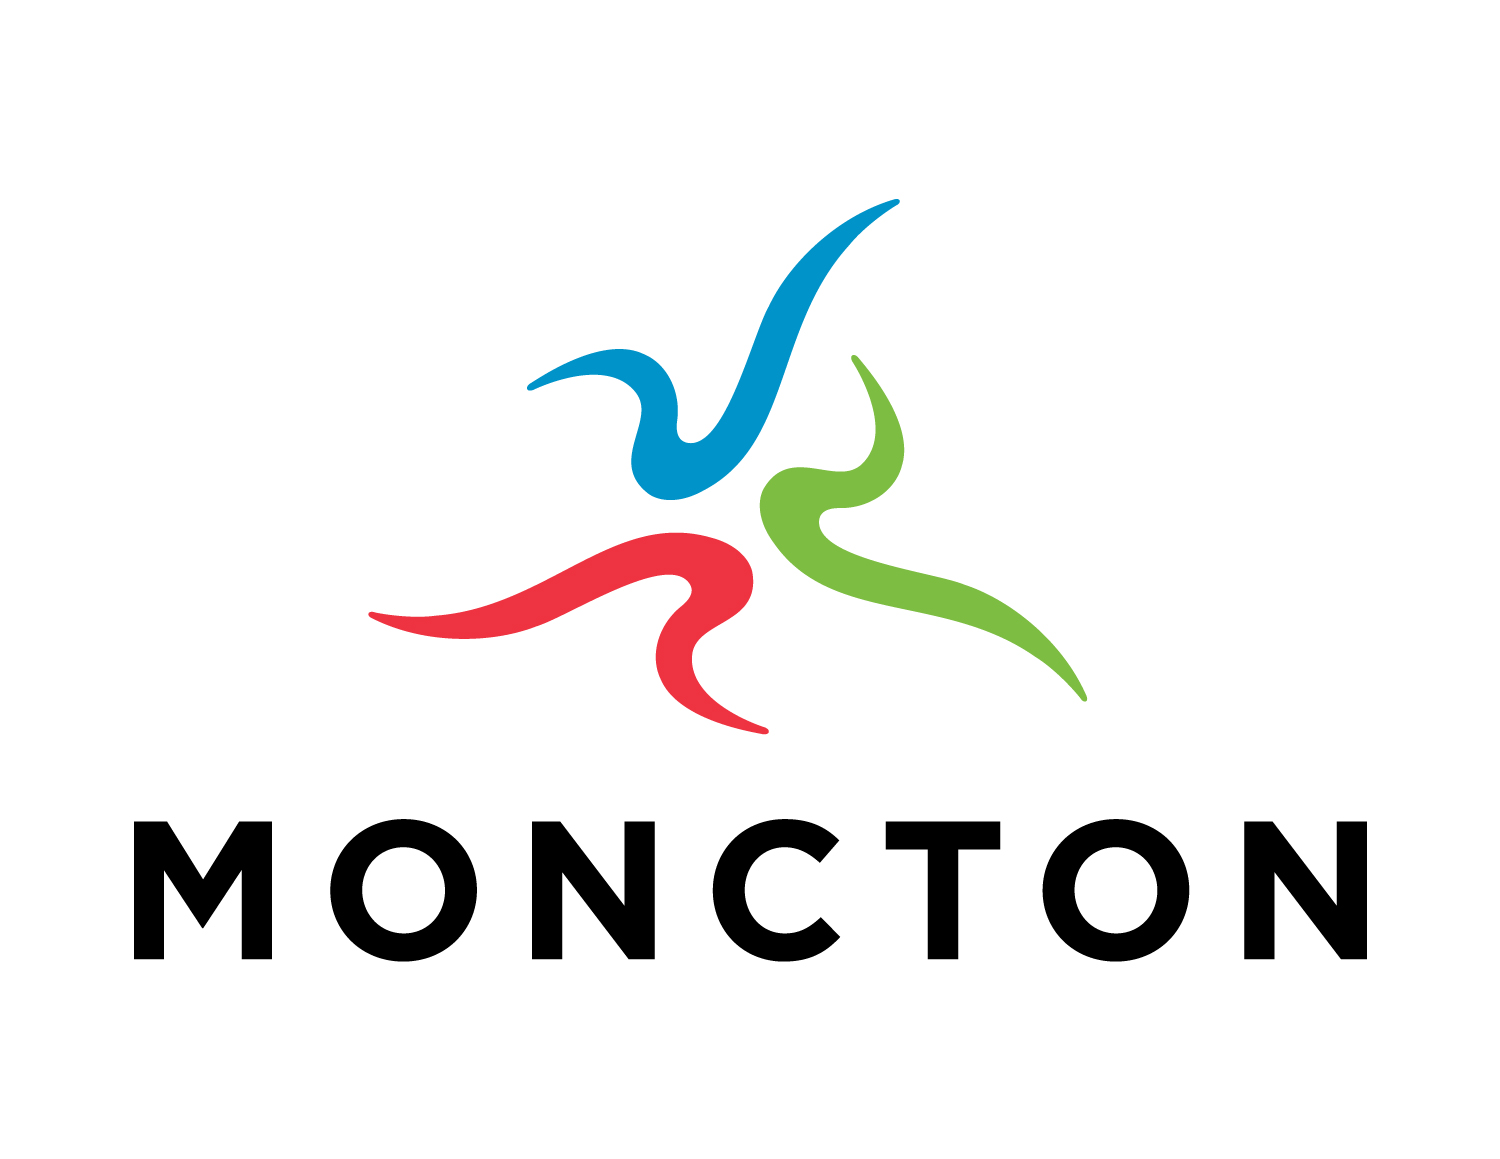 City of Moncton logo